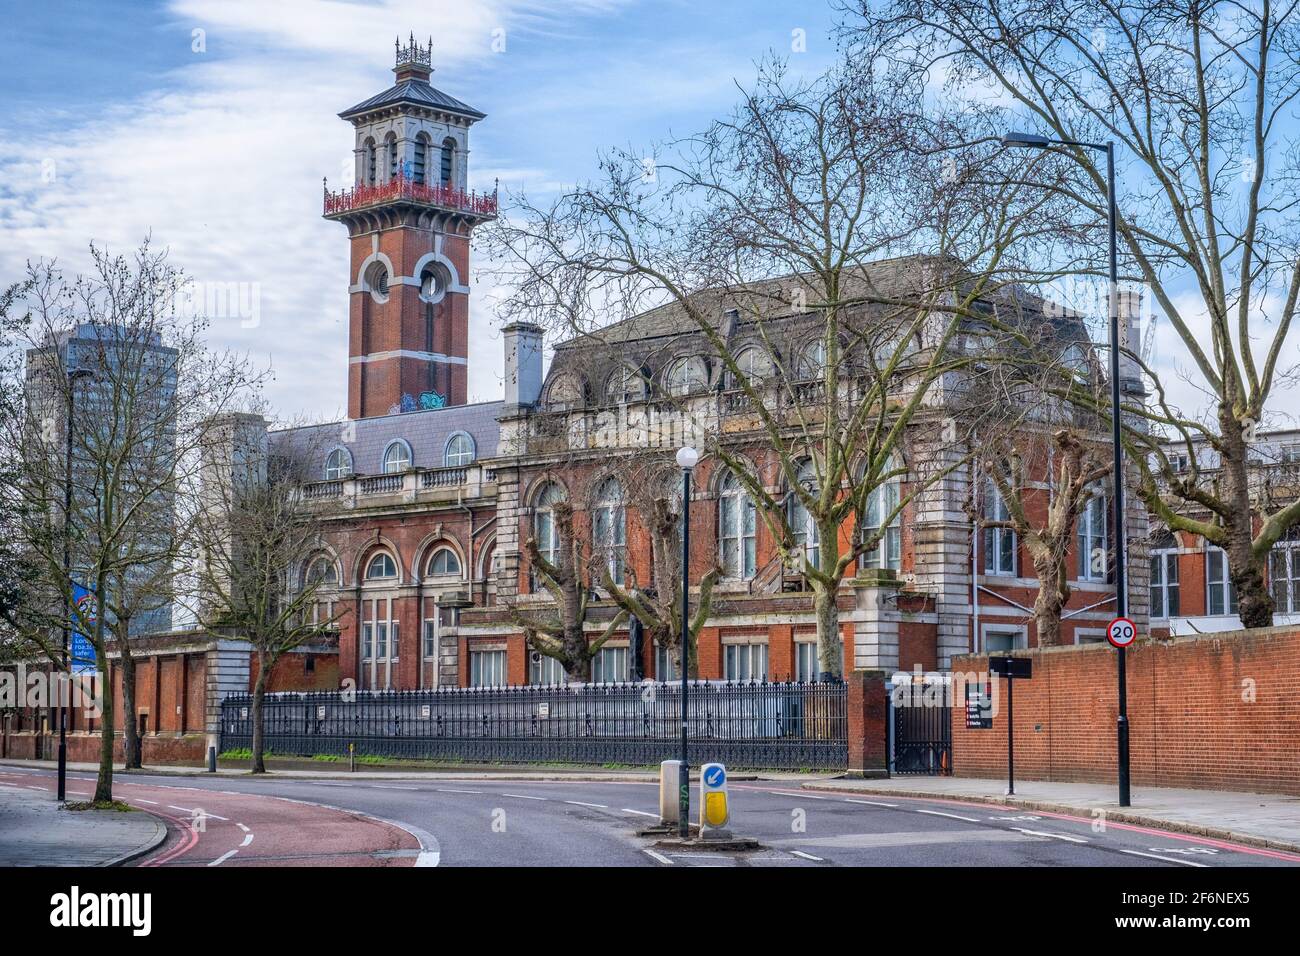 Le bâtiment victorien d'origine de l'hôpital St Thomas est situé près de Waterloo, sur Albert Embankment, à Londres, en Angleterre, au Royaume-Uni Banque D'Images